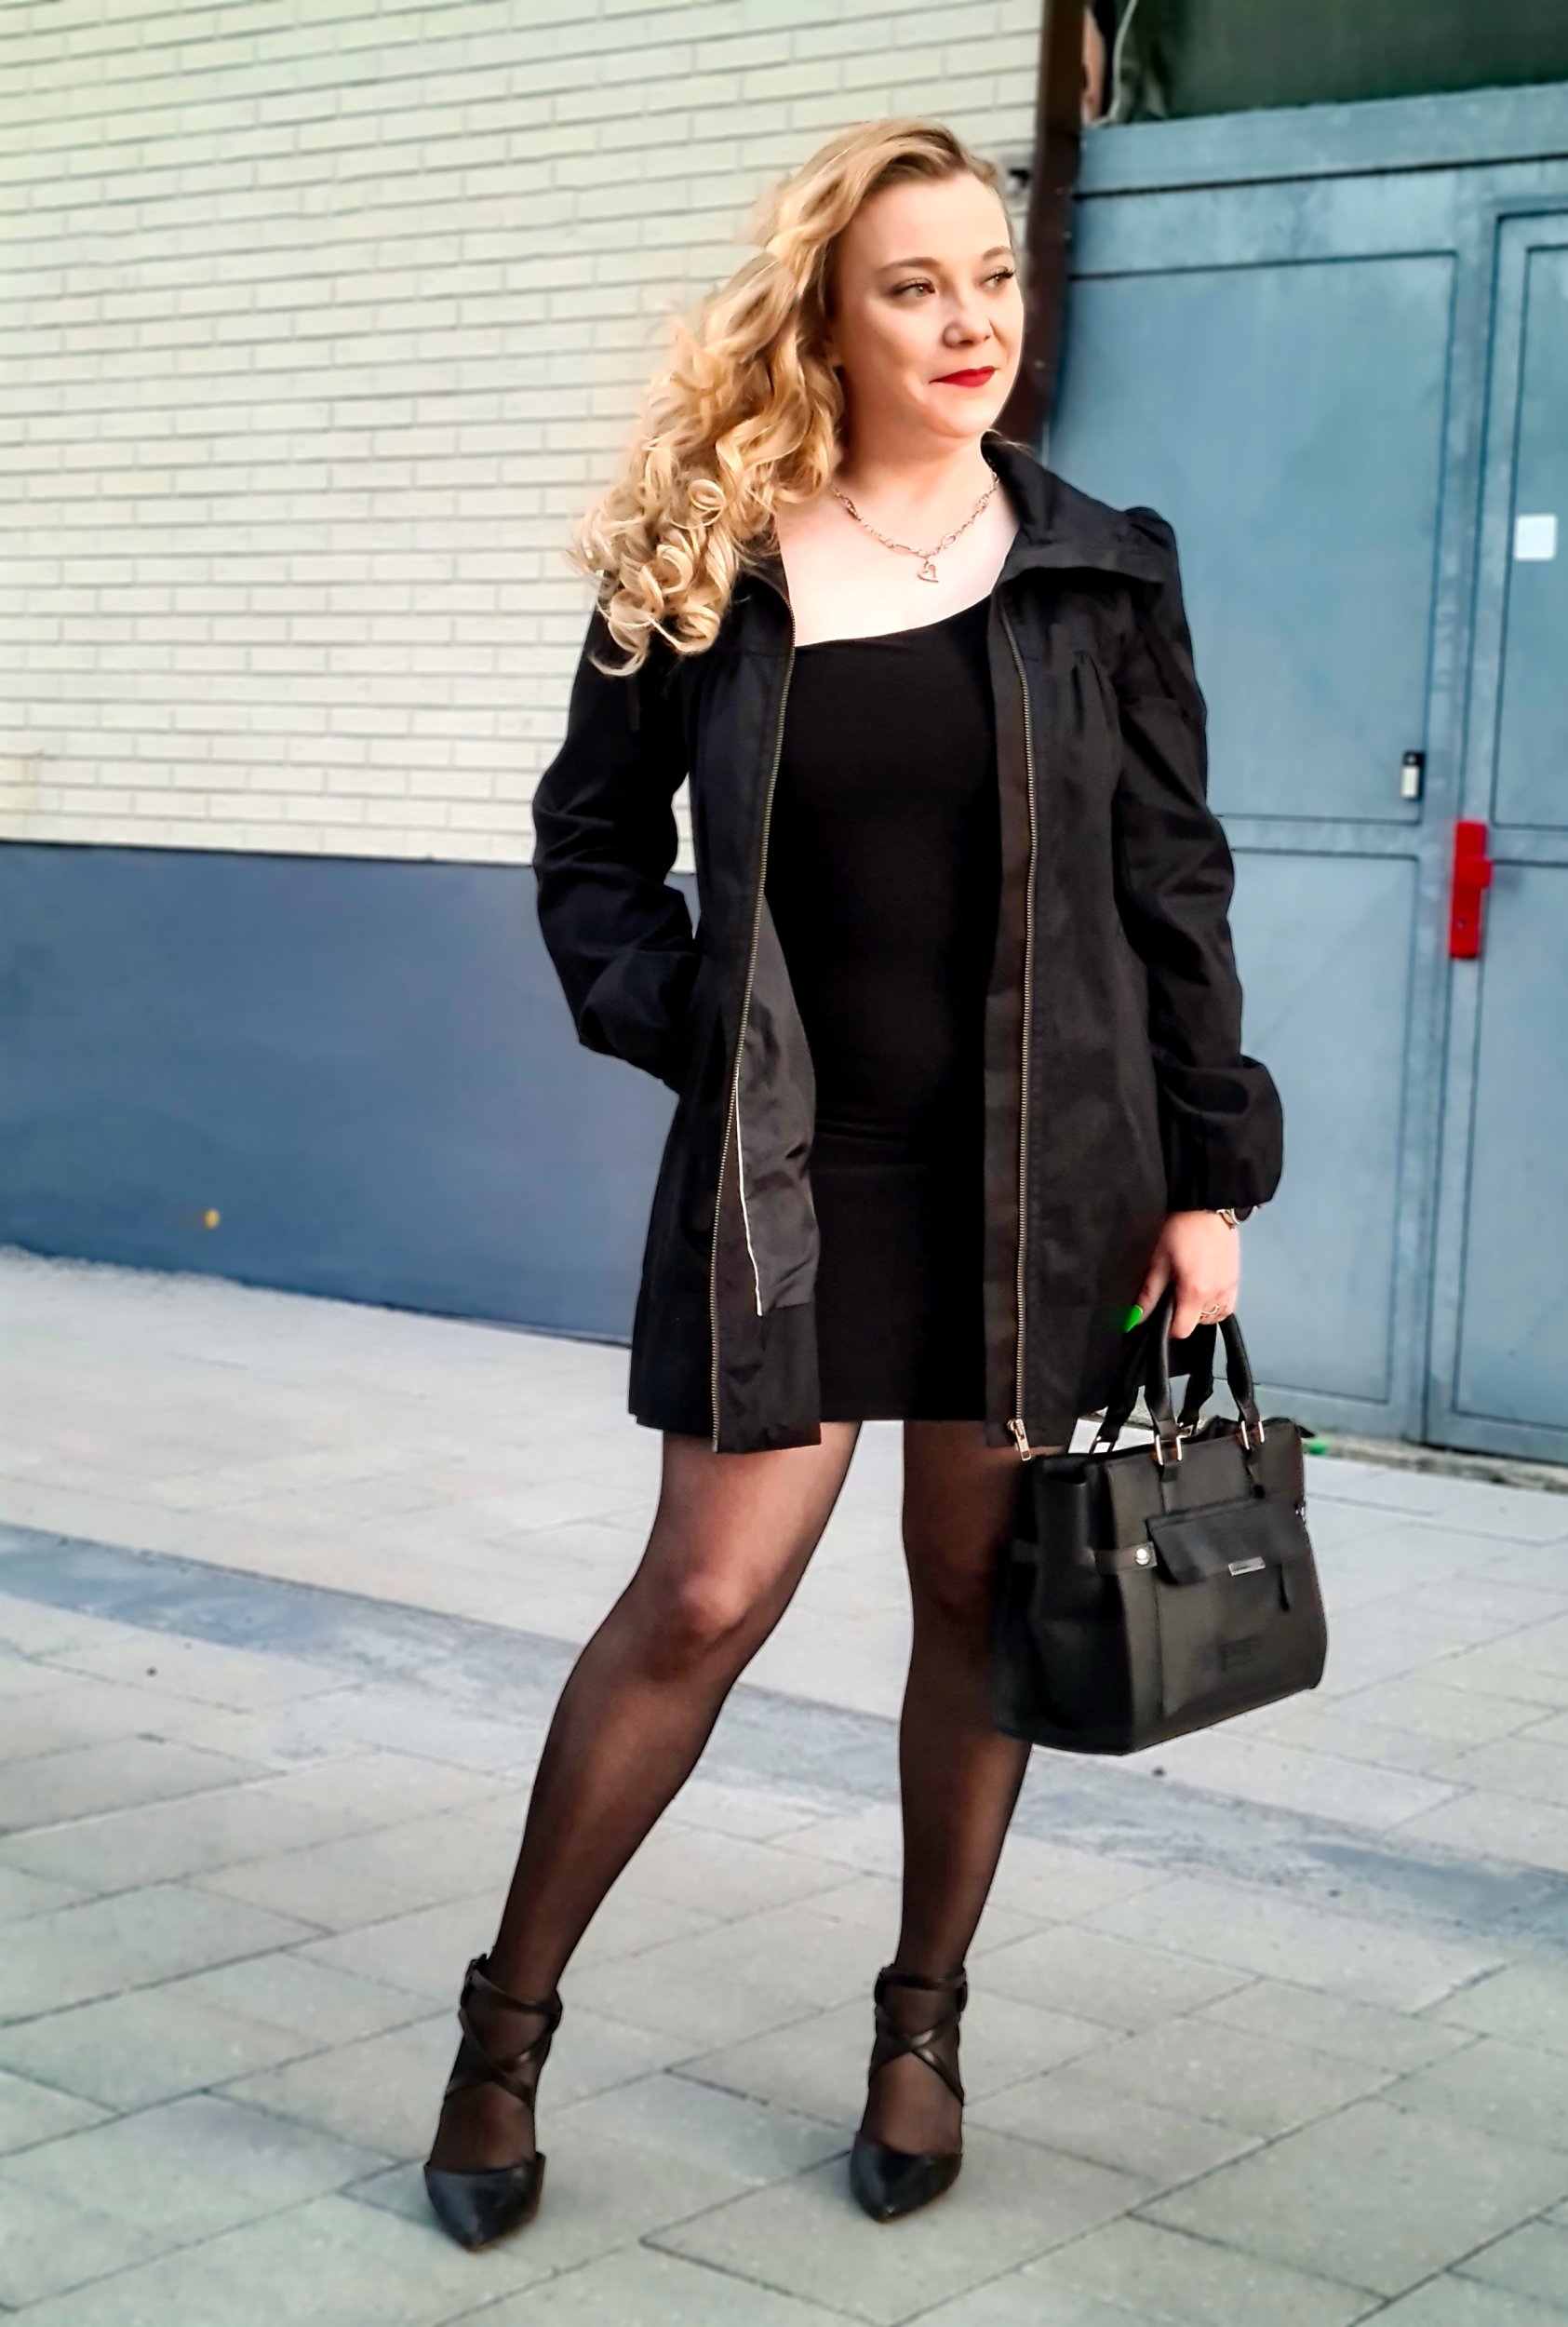 Treffen Sie Amazing Blondesluder: Top Eskorte Frau - model preview photo 2 